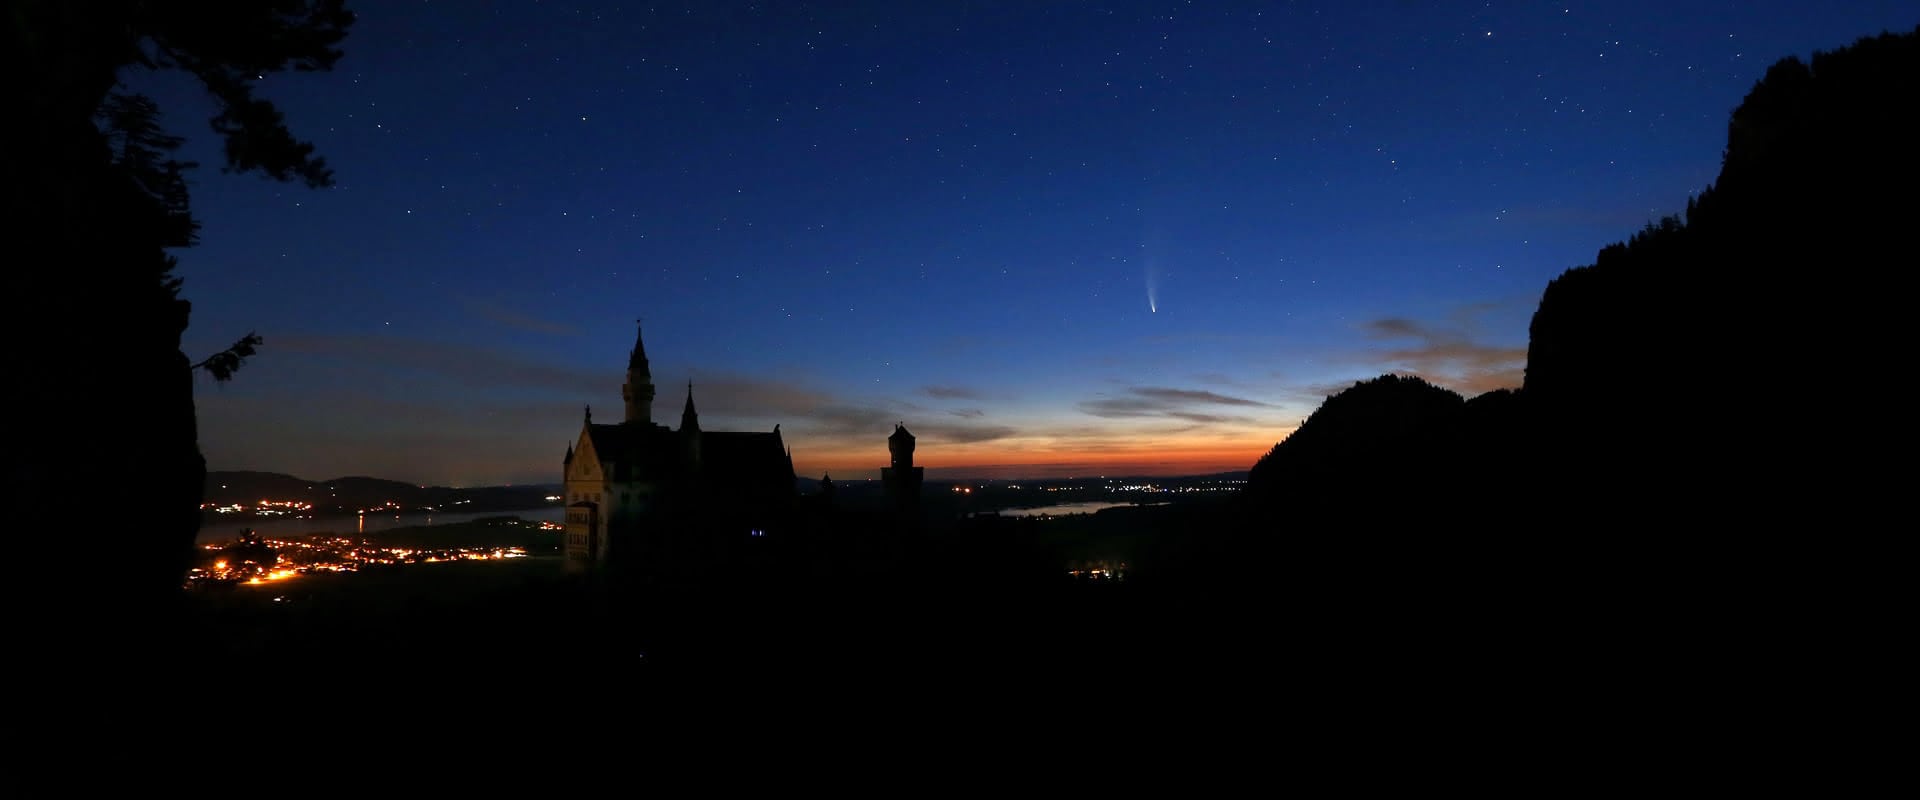 Komet Neowise über Schloss Neuschwanstein vor Sonnenaufgang.